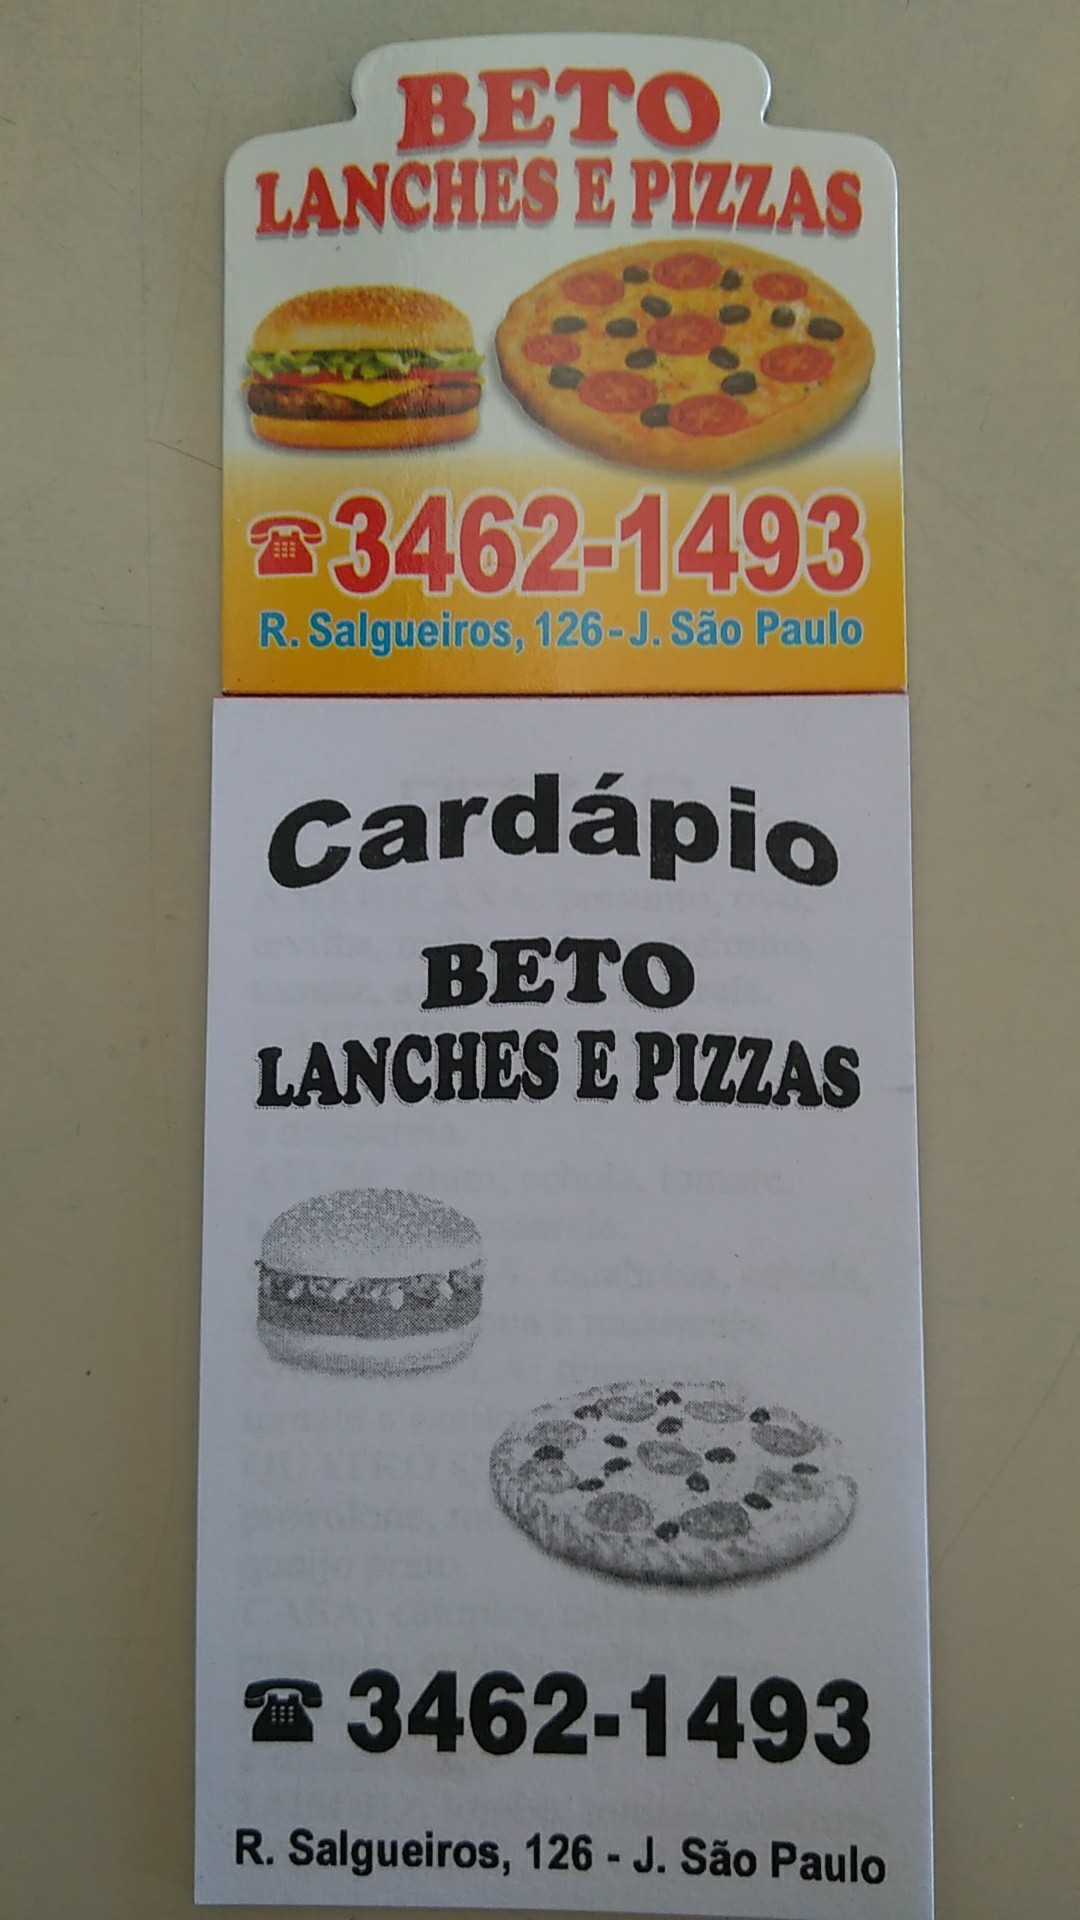 Beto Lanches e Pizzas